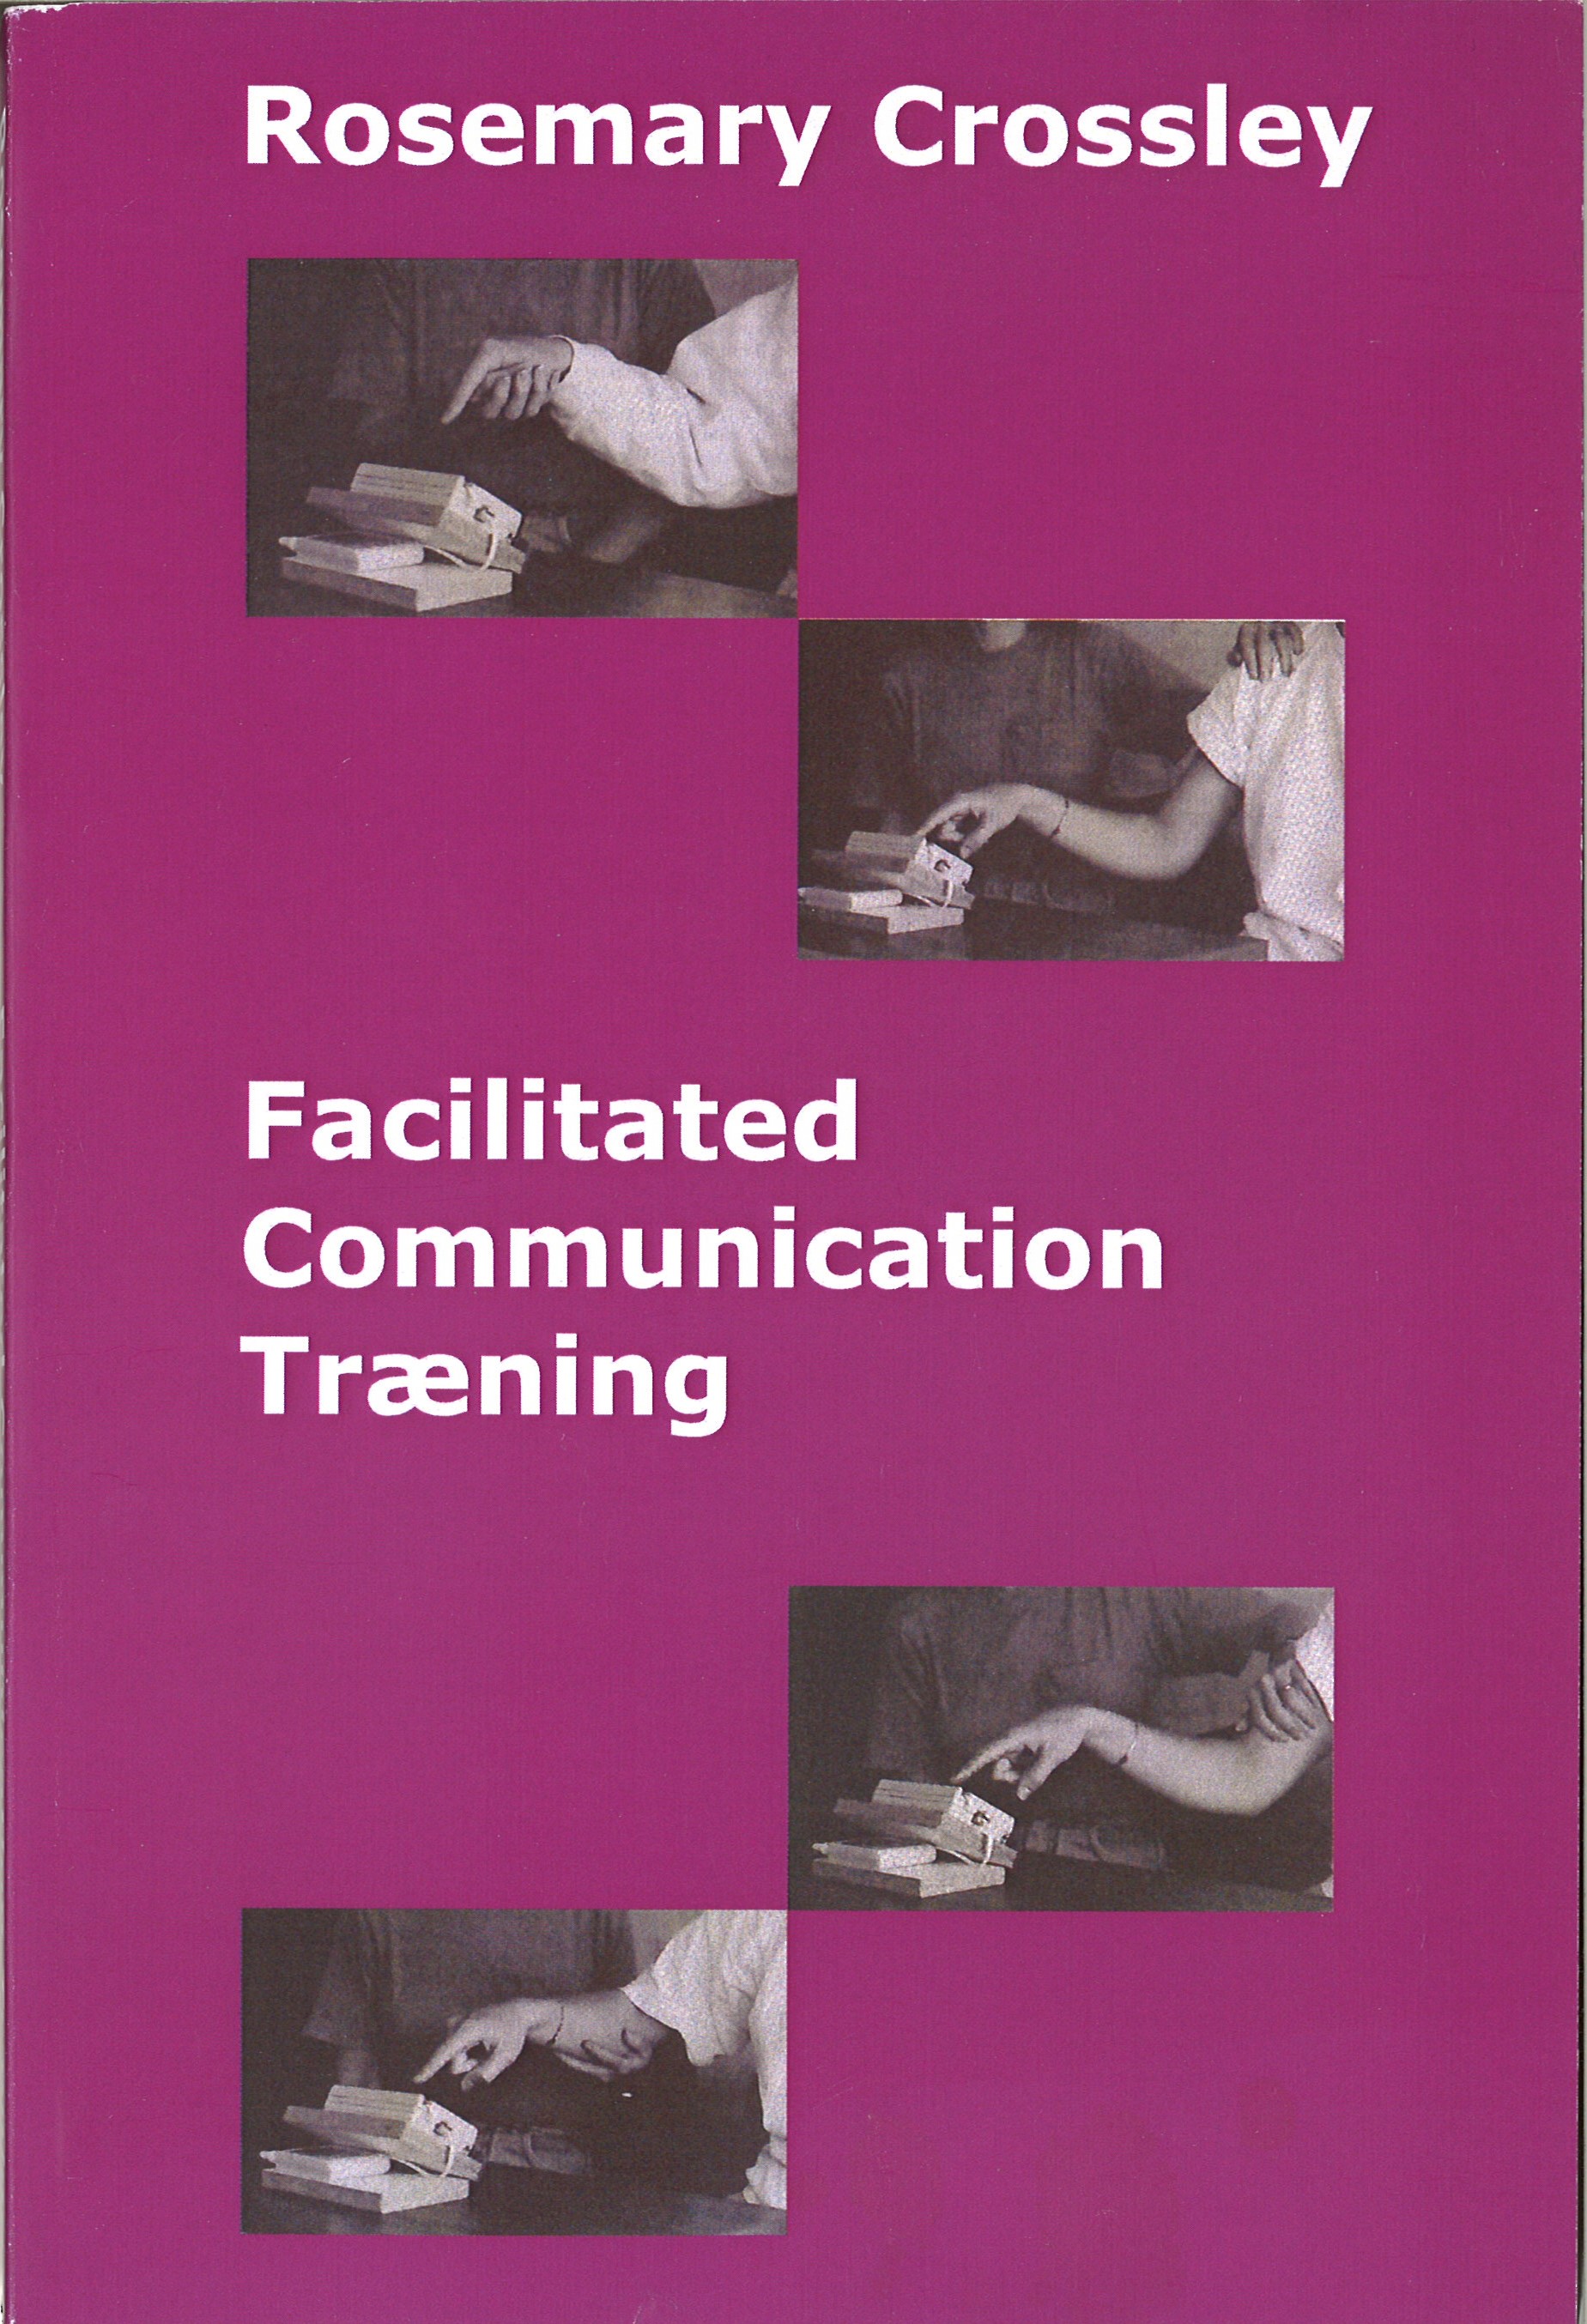 BOG - Crossley - Facilitated Communication Træning